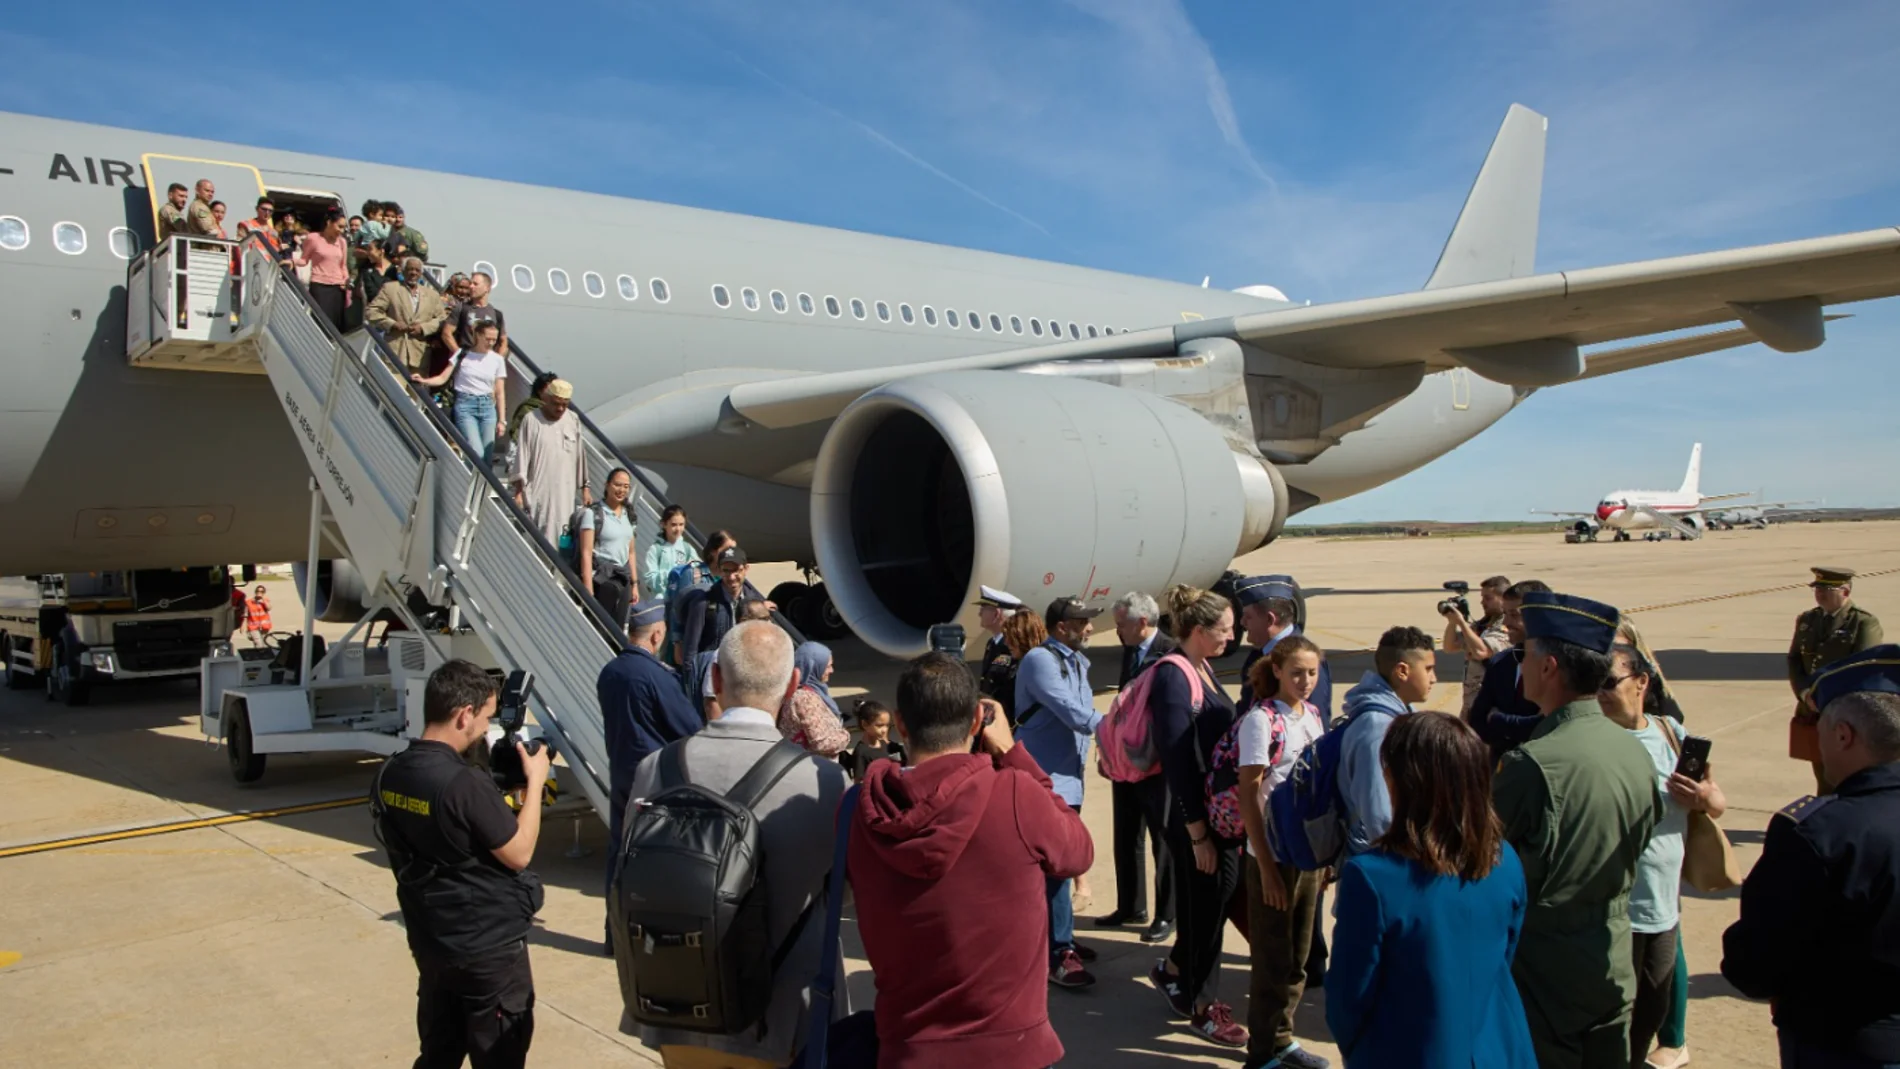 Llega a Torrejón el avión con 72 personas evacuadas de Sudán